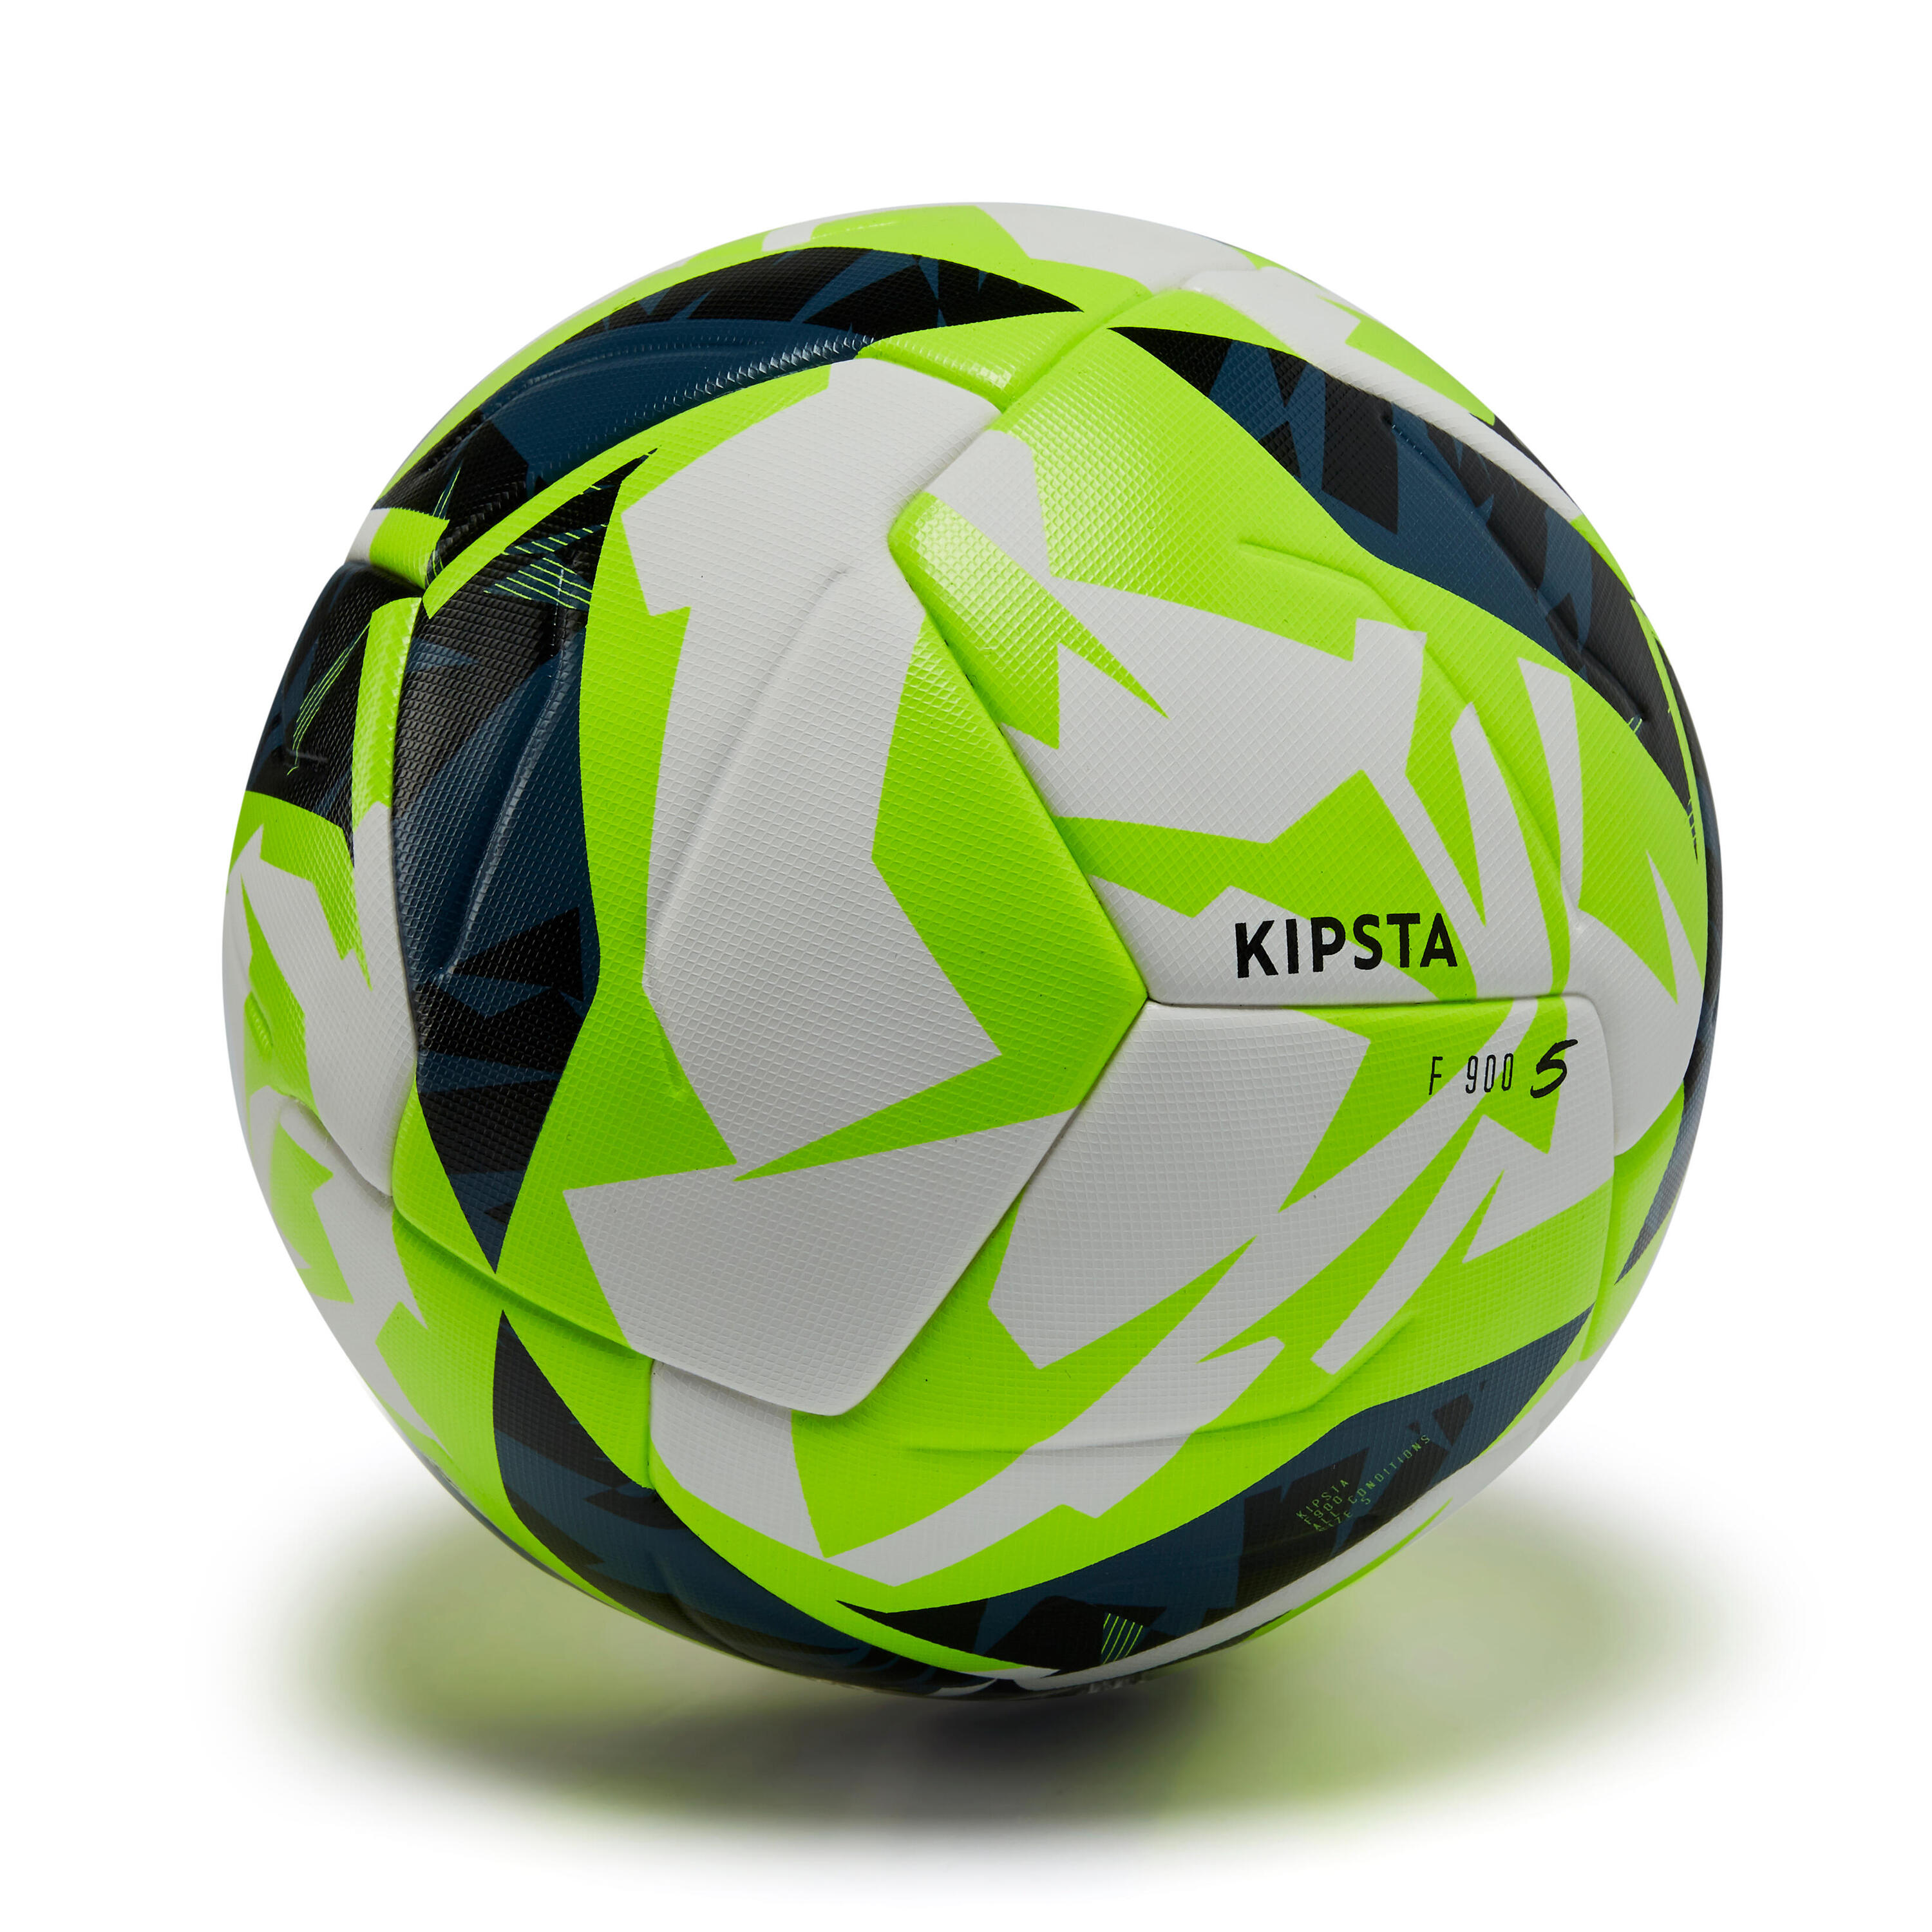 Мячи fifa pro. KIPSTA f900 мяч FIFA quality Pro белый размер 5 x Декатлон футбольный. Мяч футбольный FIFA quality Pro 1000982. Мяч футбольный Декатлон. FIFA quality Pro 1006129.